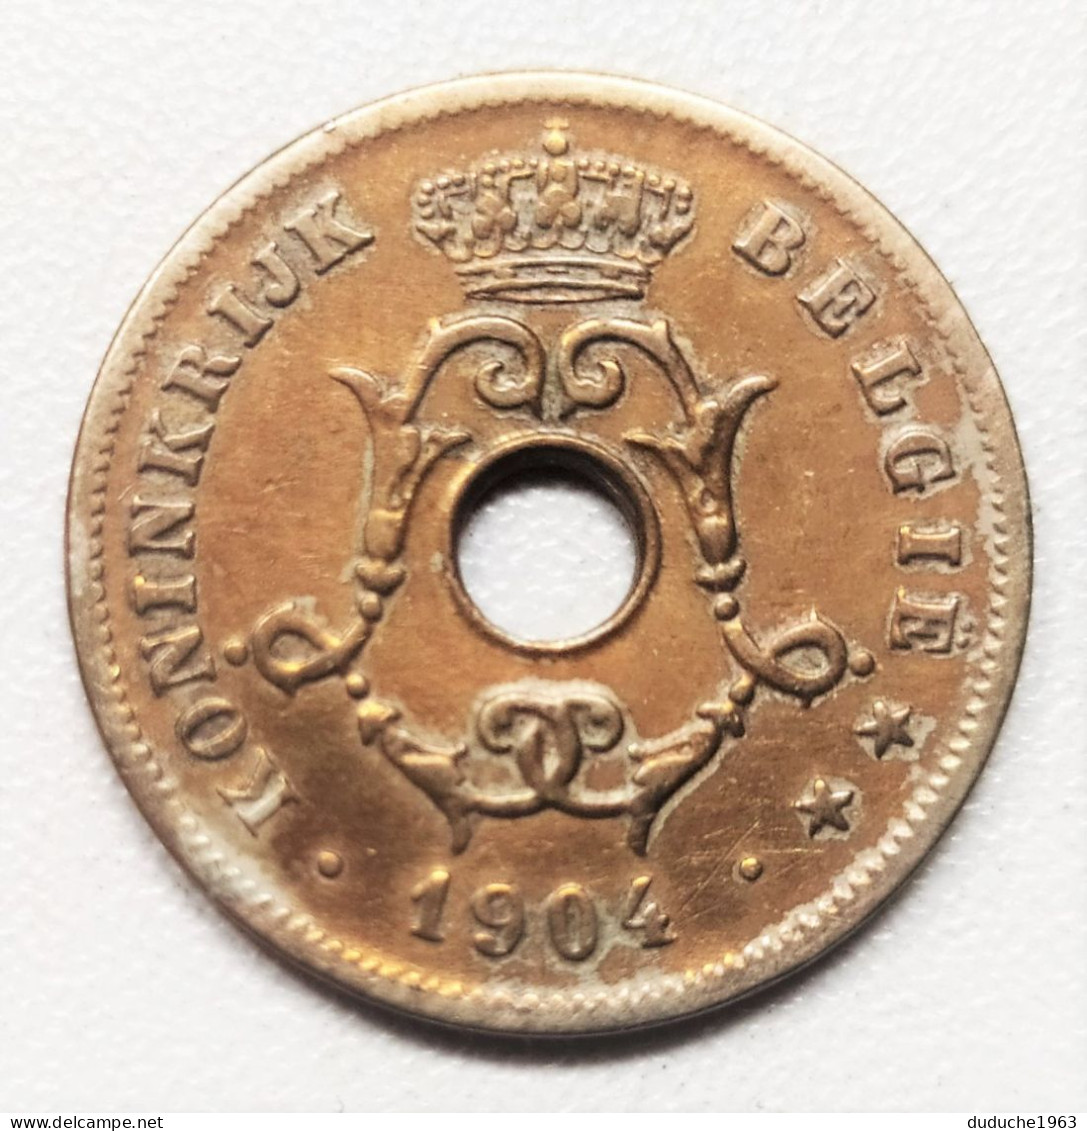 Belgique - 10 Centimes 1904 - 10 Cents